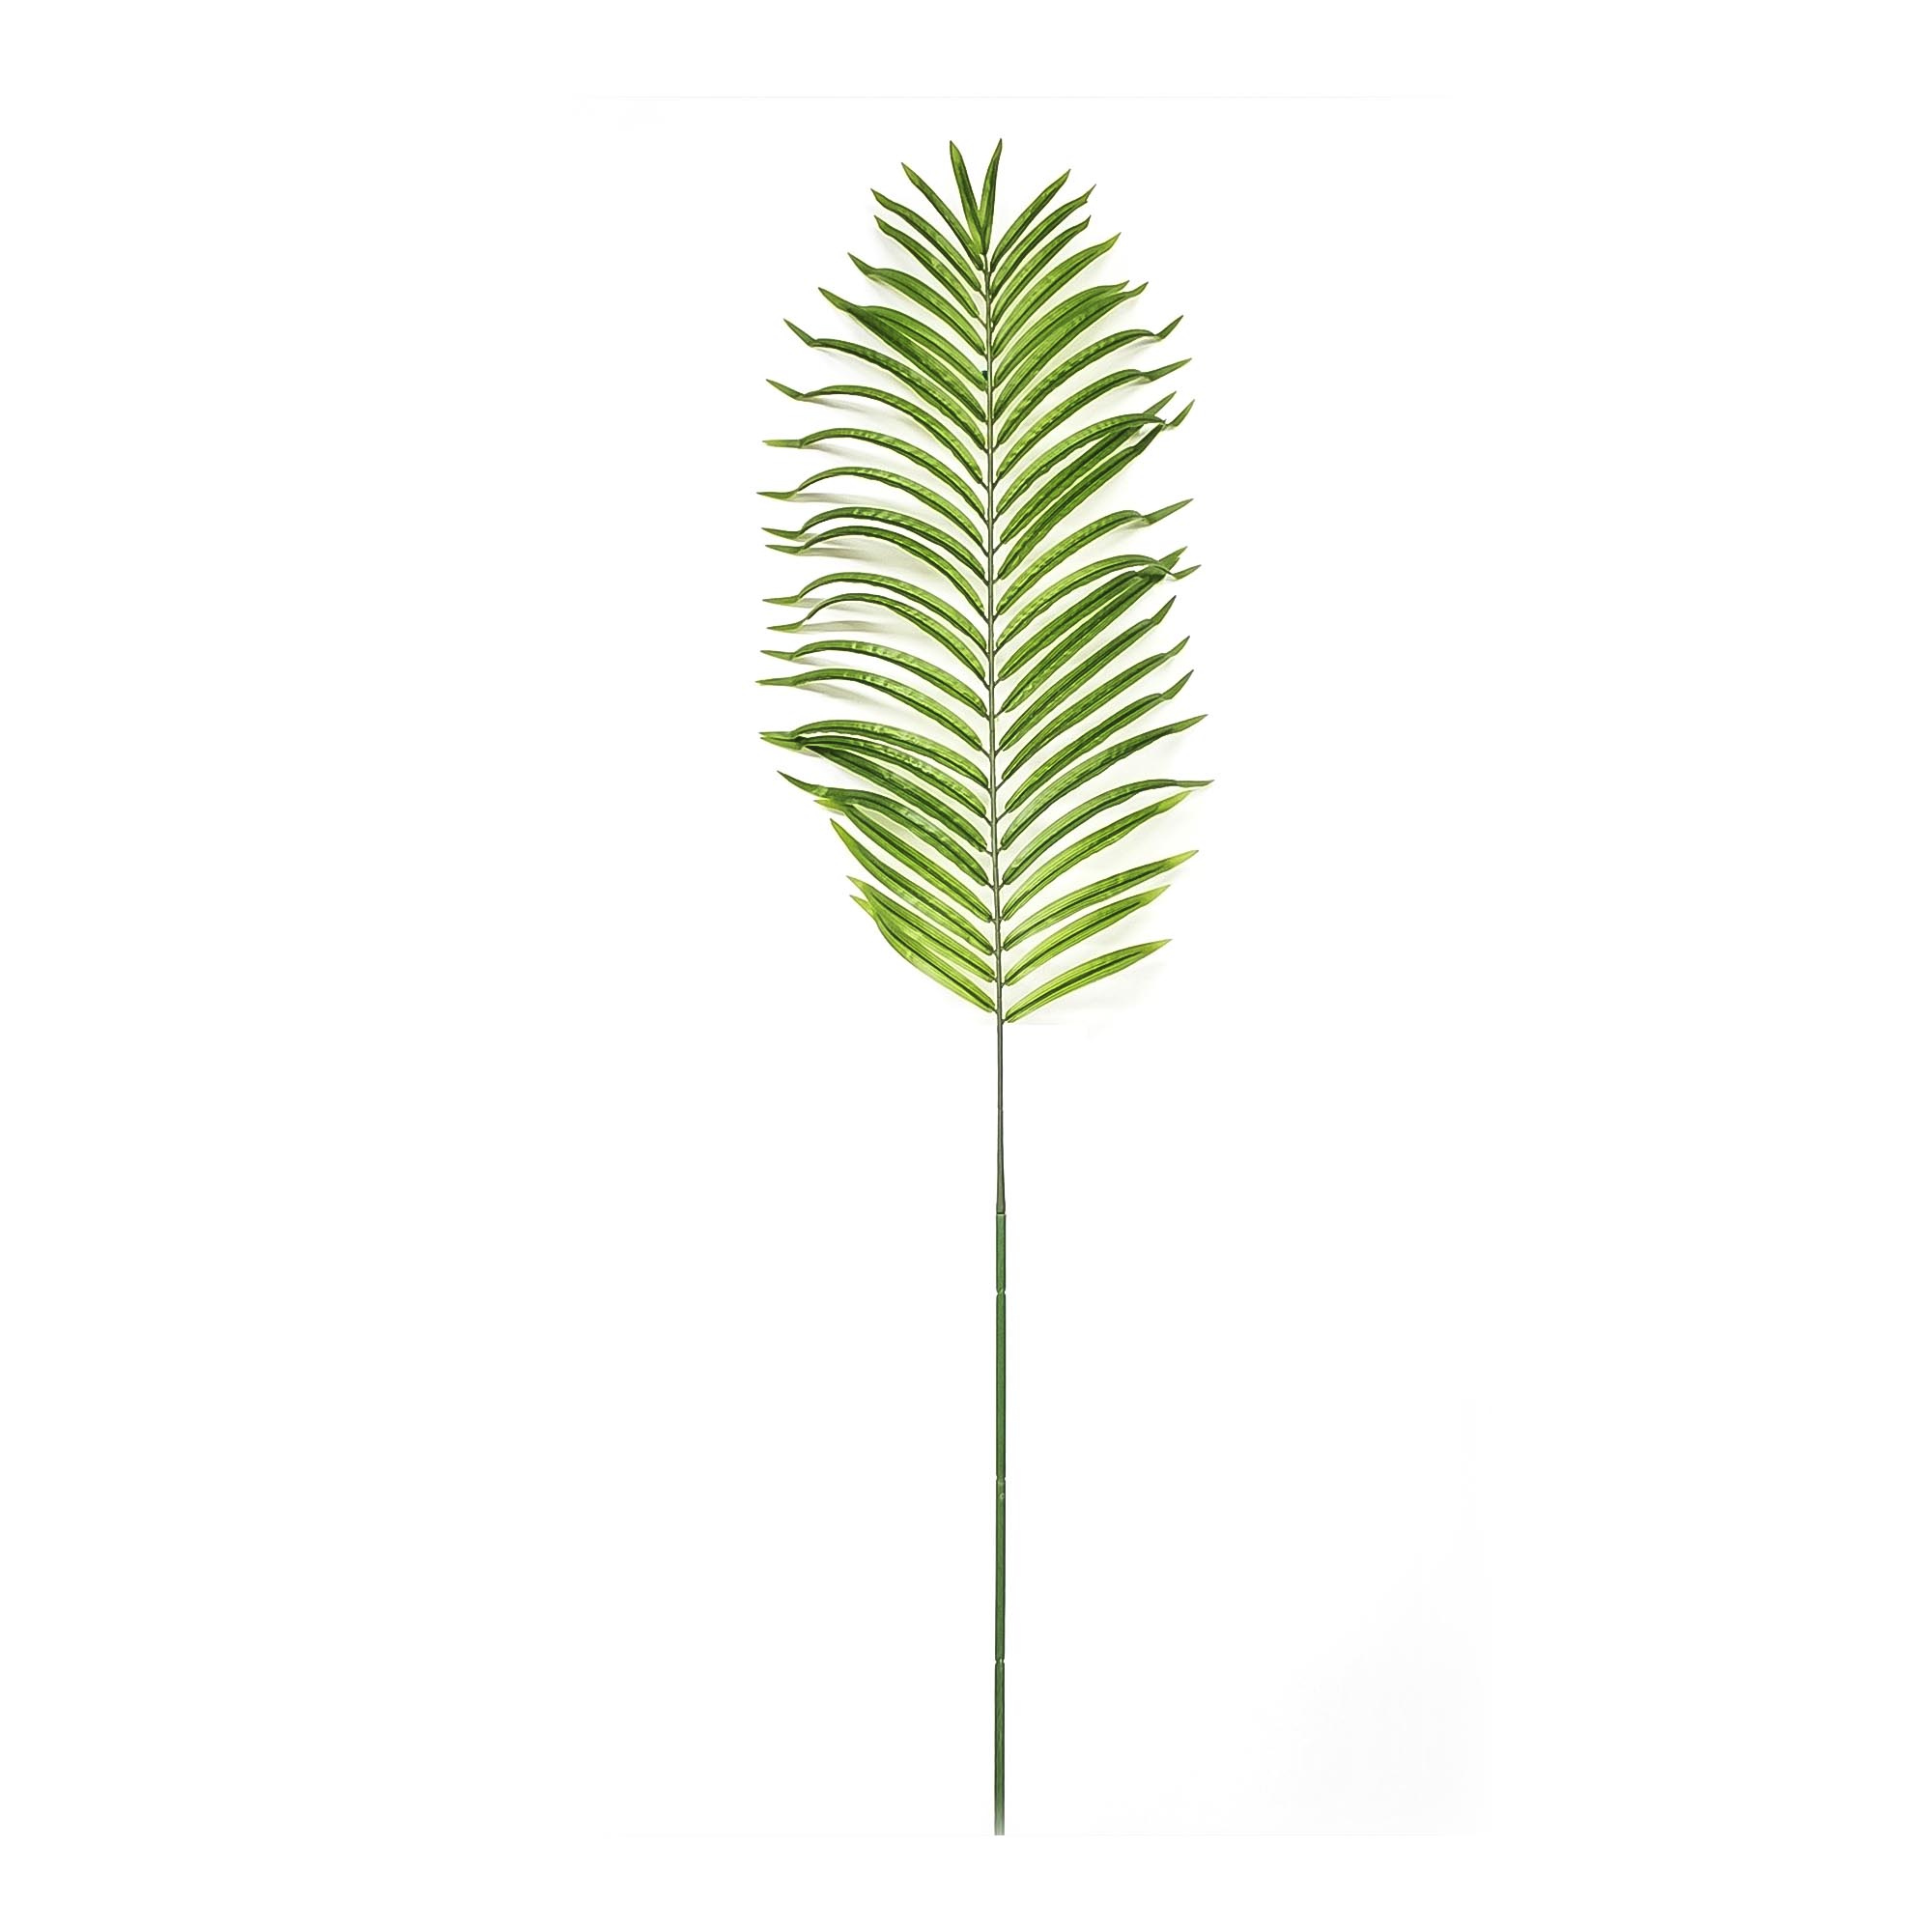 Лист пальмы арека Конэко-О 130 см, цвет зеленый - фото 1